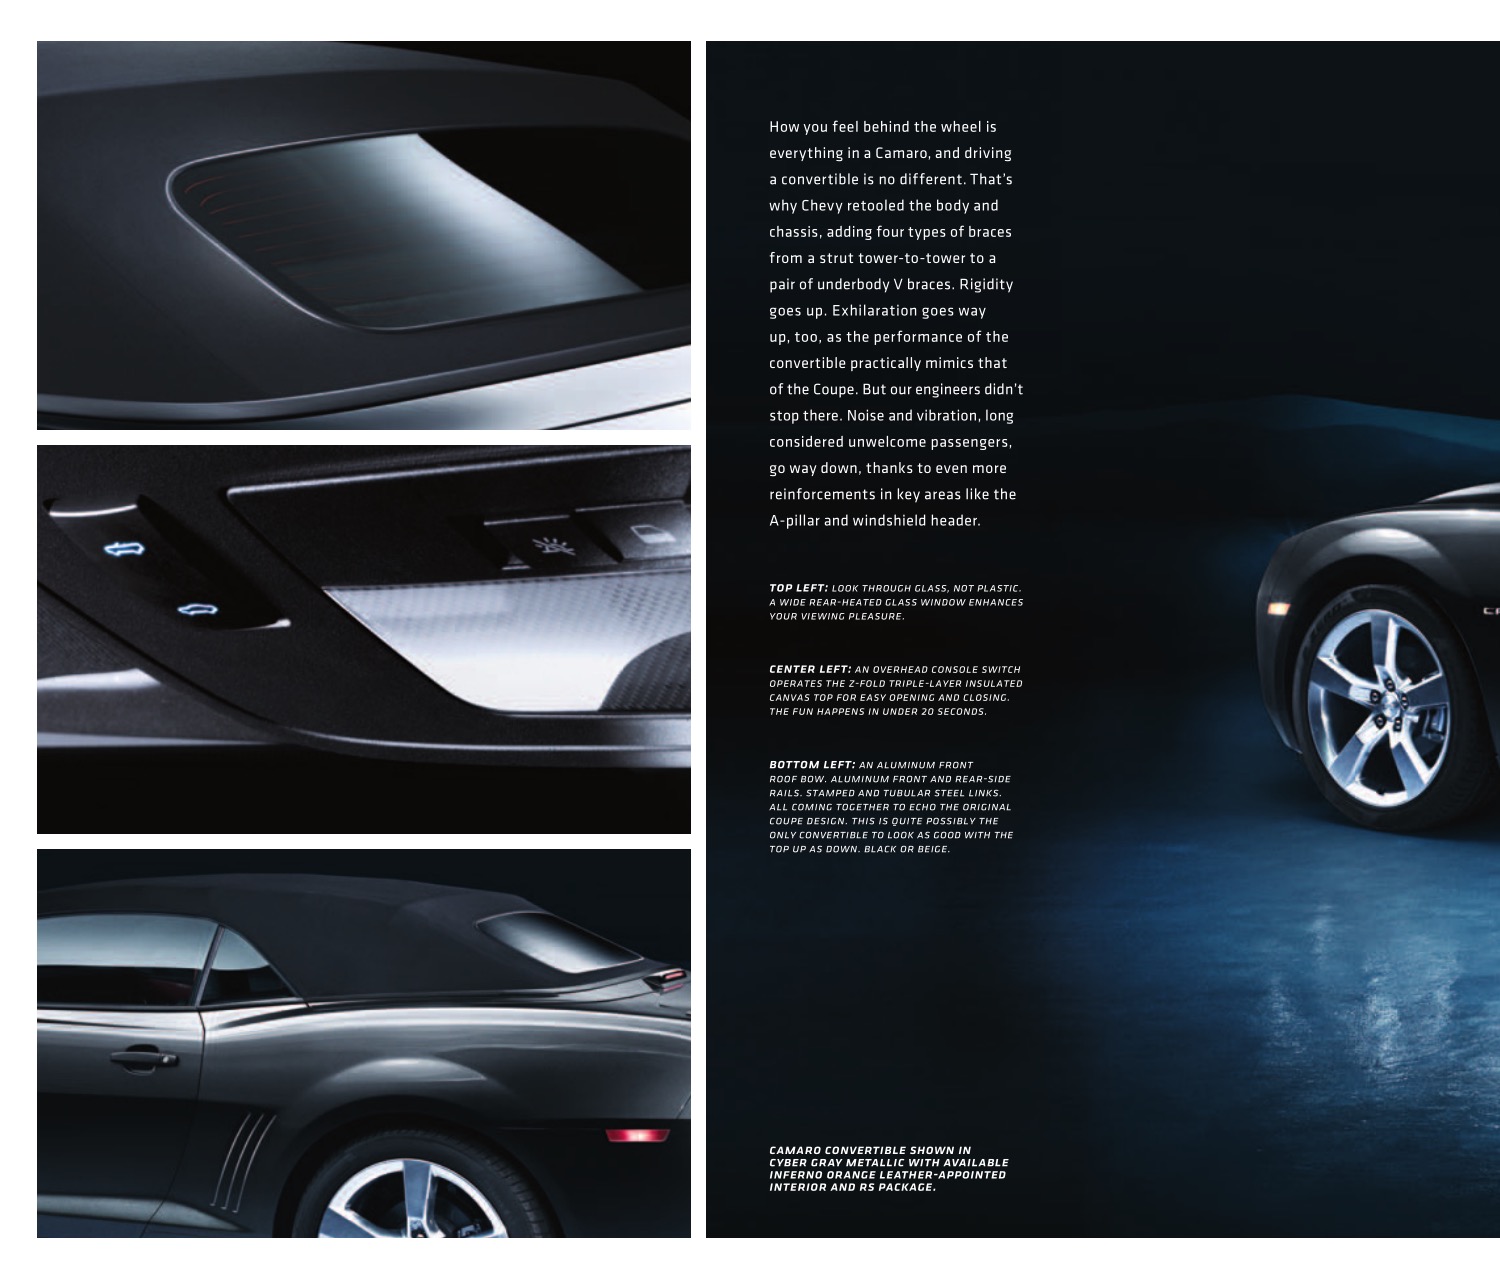 2011 Chev Camaro Brochure Page 8